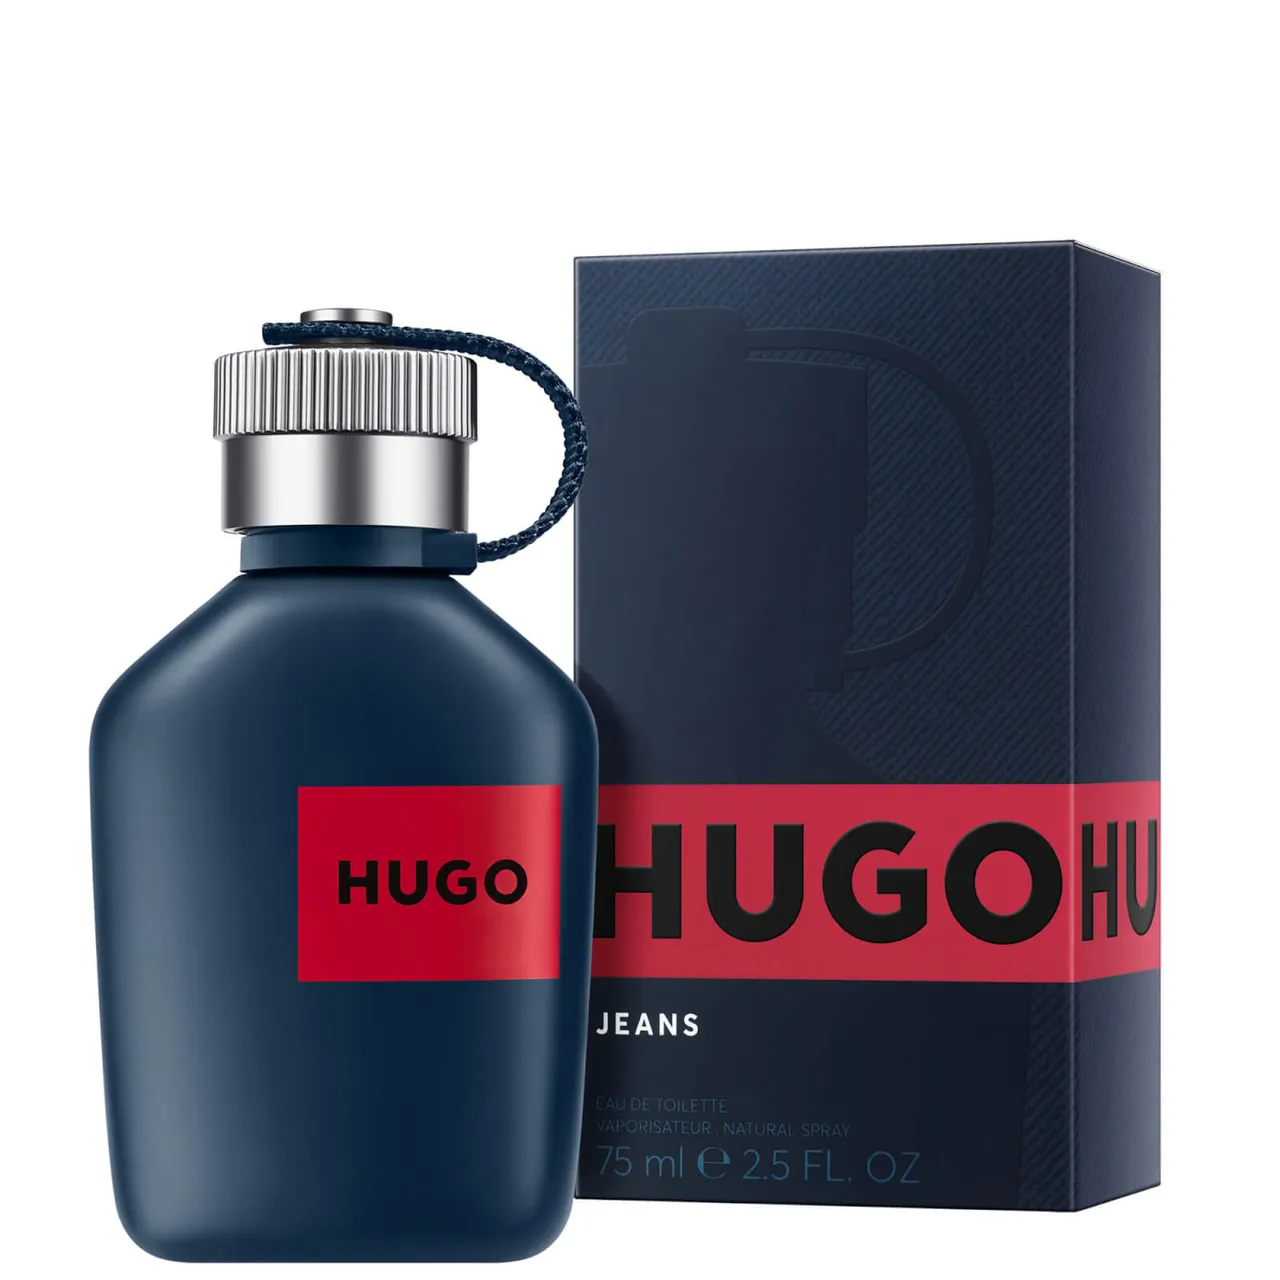 Hugo Boss HUGO Jeans for Men Eau de Toilette 75ml